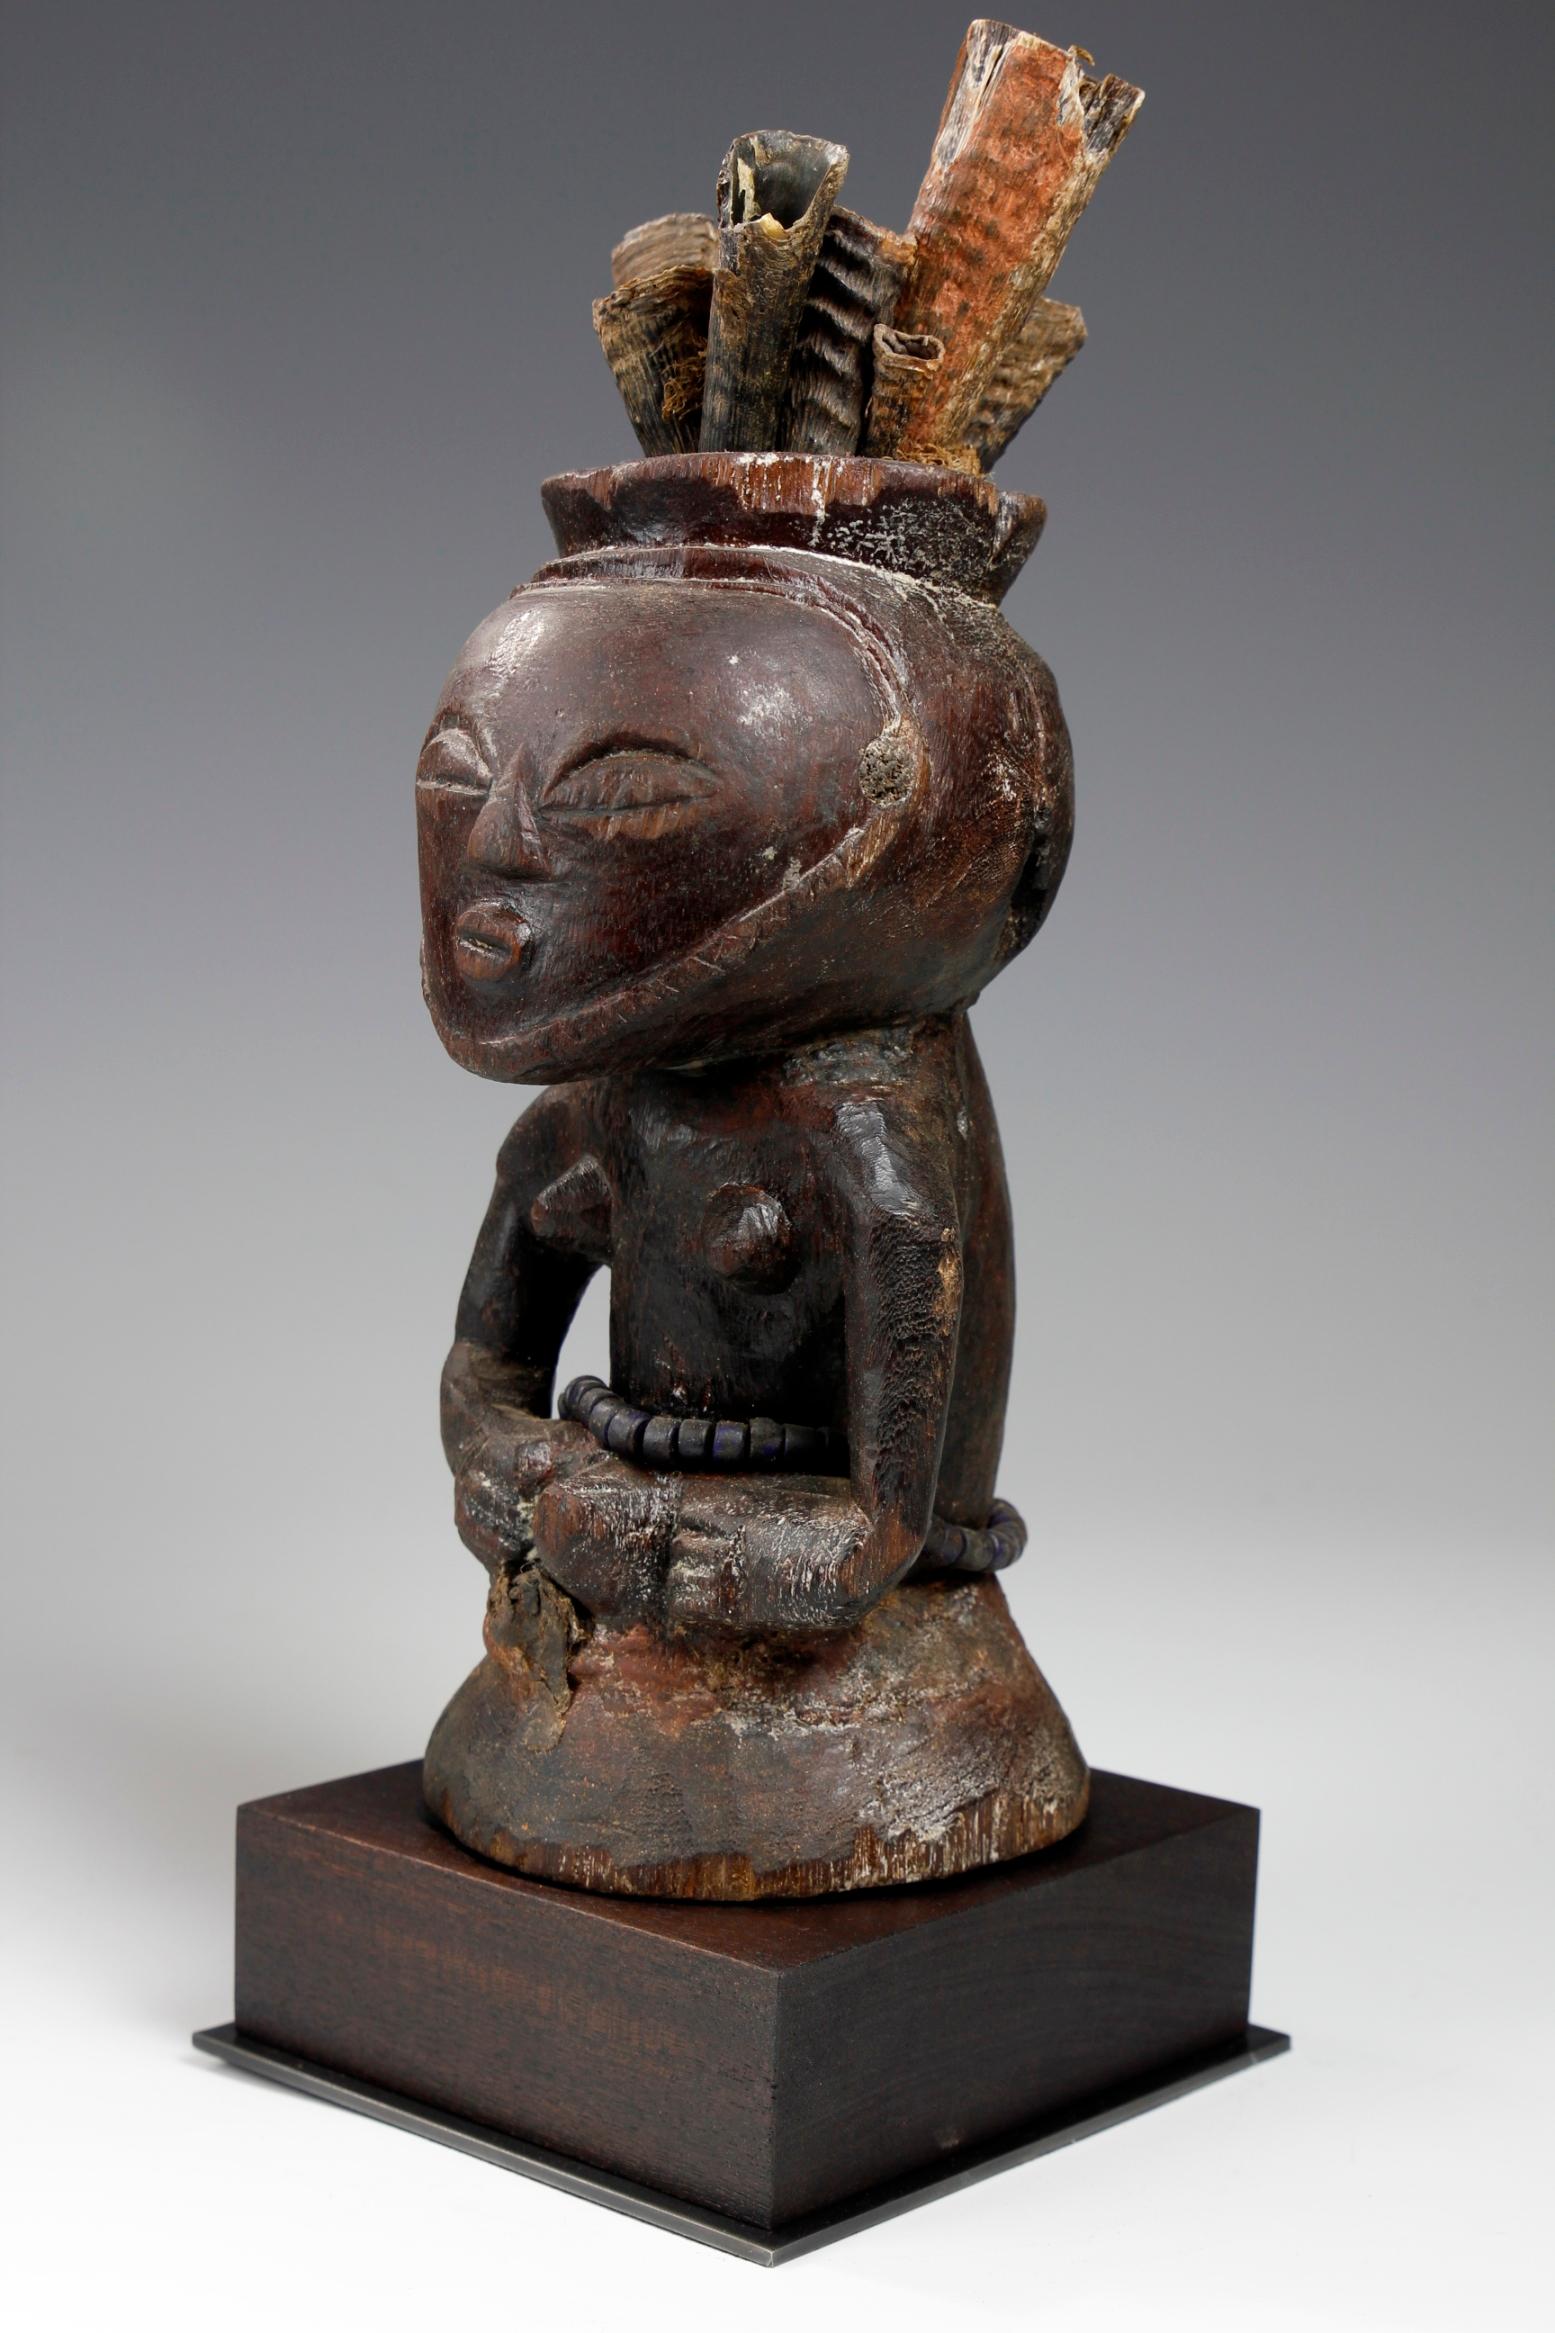 Diese schöne Fetischfigur aus der Luba/Kusu-Kultur in der Demokratischen Republik Kongo stammt aus dem frühen zwanzigsten Jahrhundert oder früher, aus dem neunzehnten Jahrhundert. Die geschnitzte Figur hat einen ausgeprägten Kopf,  mit einem Paar